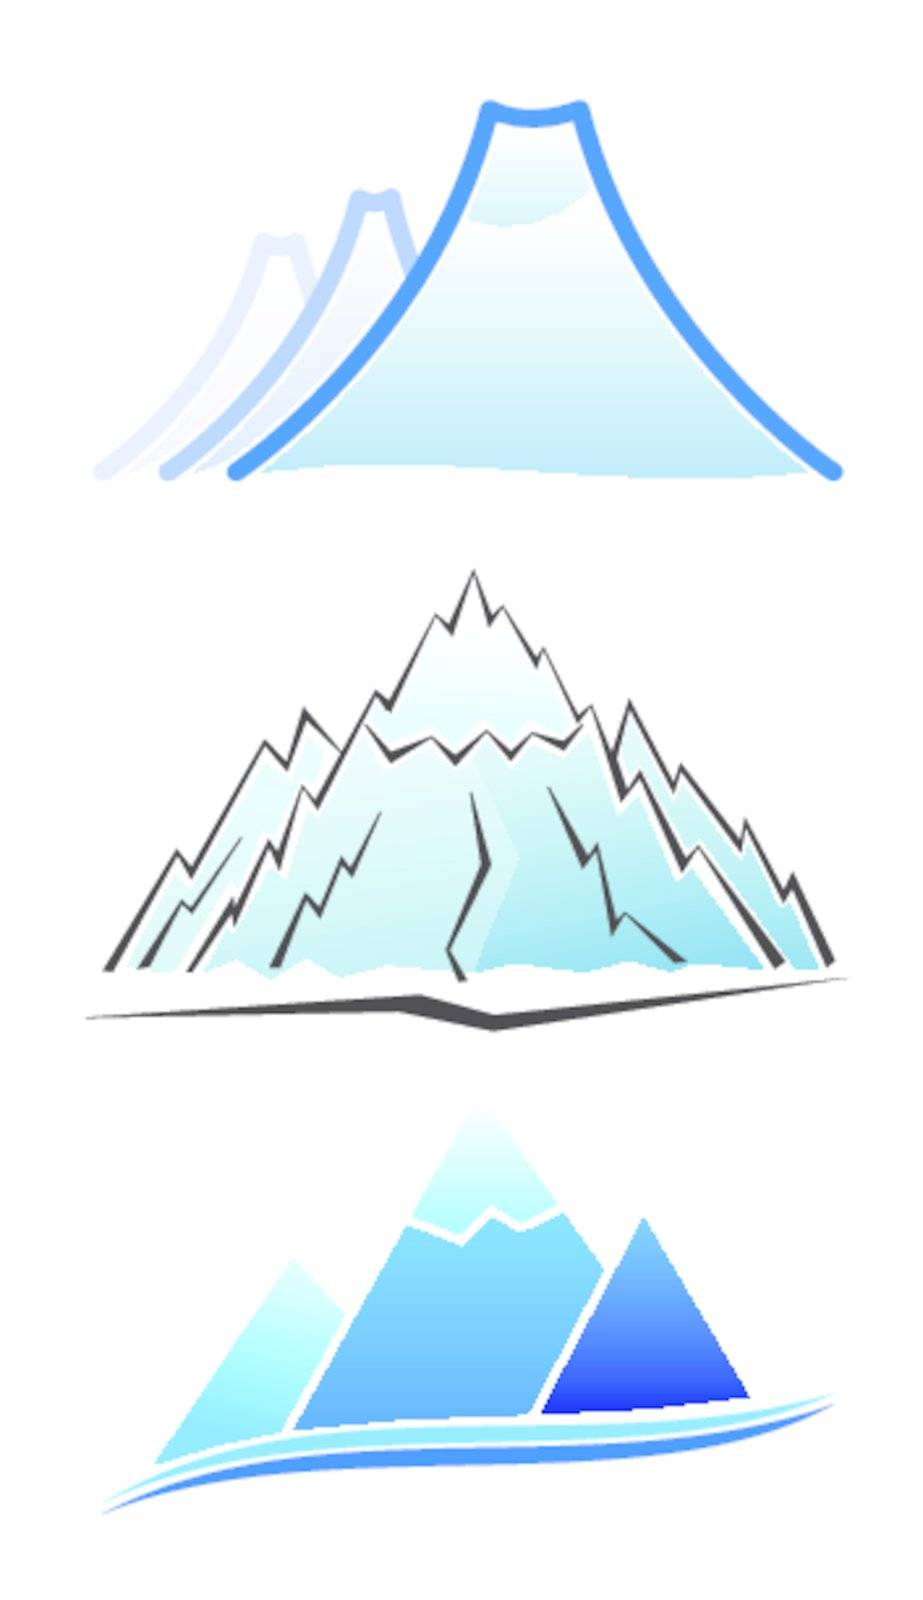 Set of mountain icons